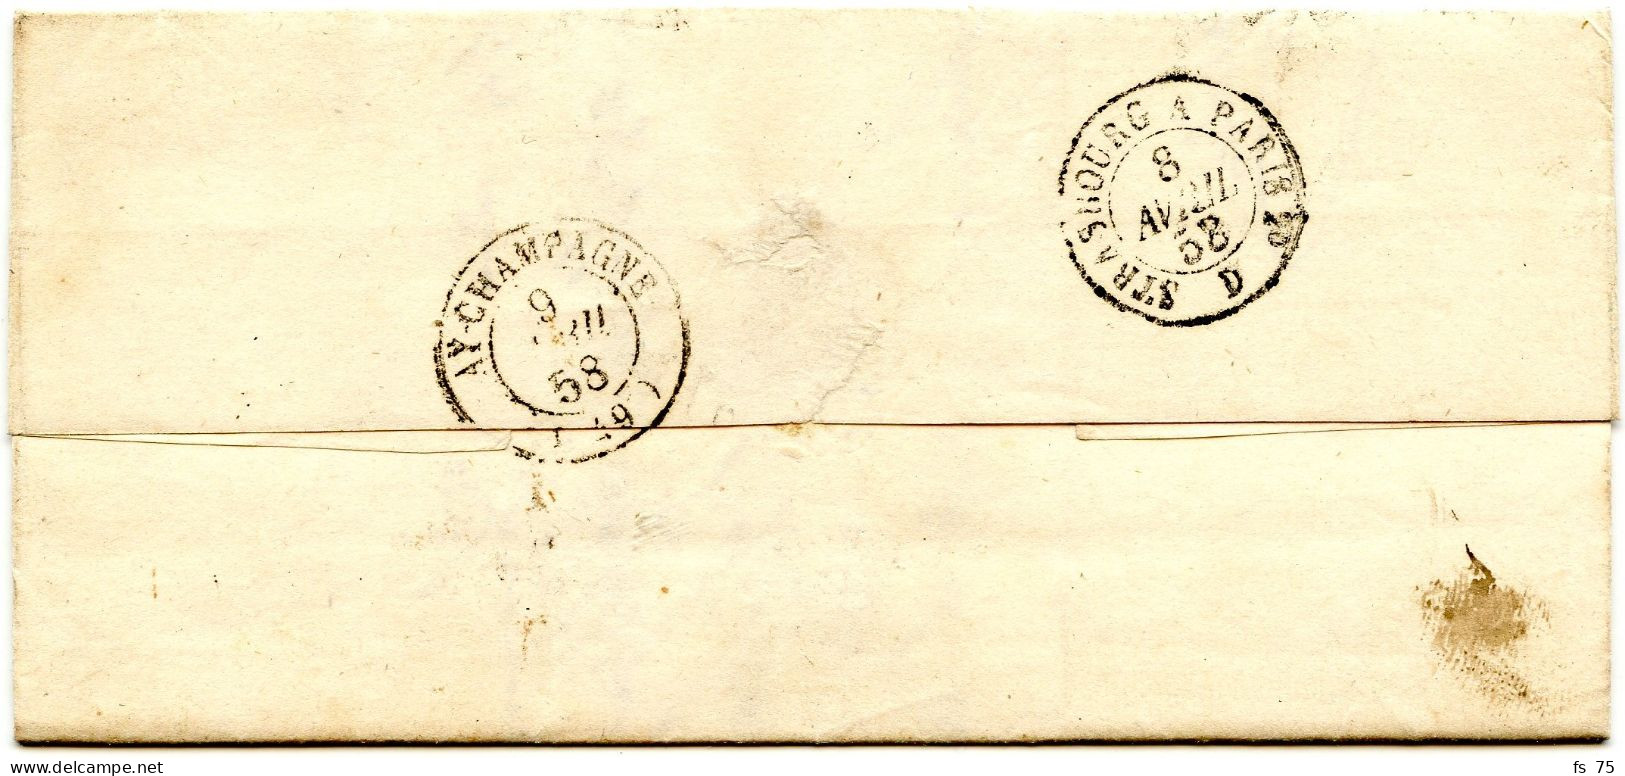 ALLEMAGNE - BLIESKASTEL + DEP. LIM. + TAXE 3, 1858 - Vorphilatelie